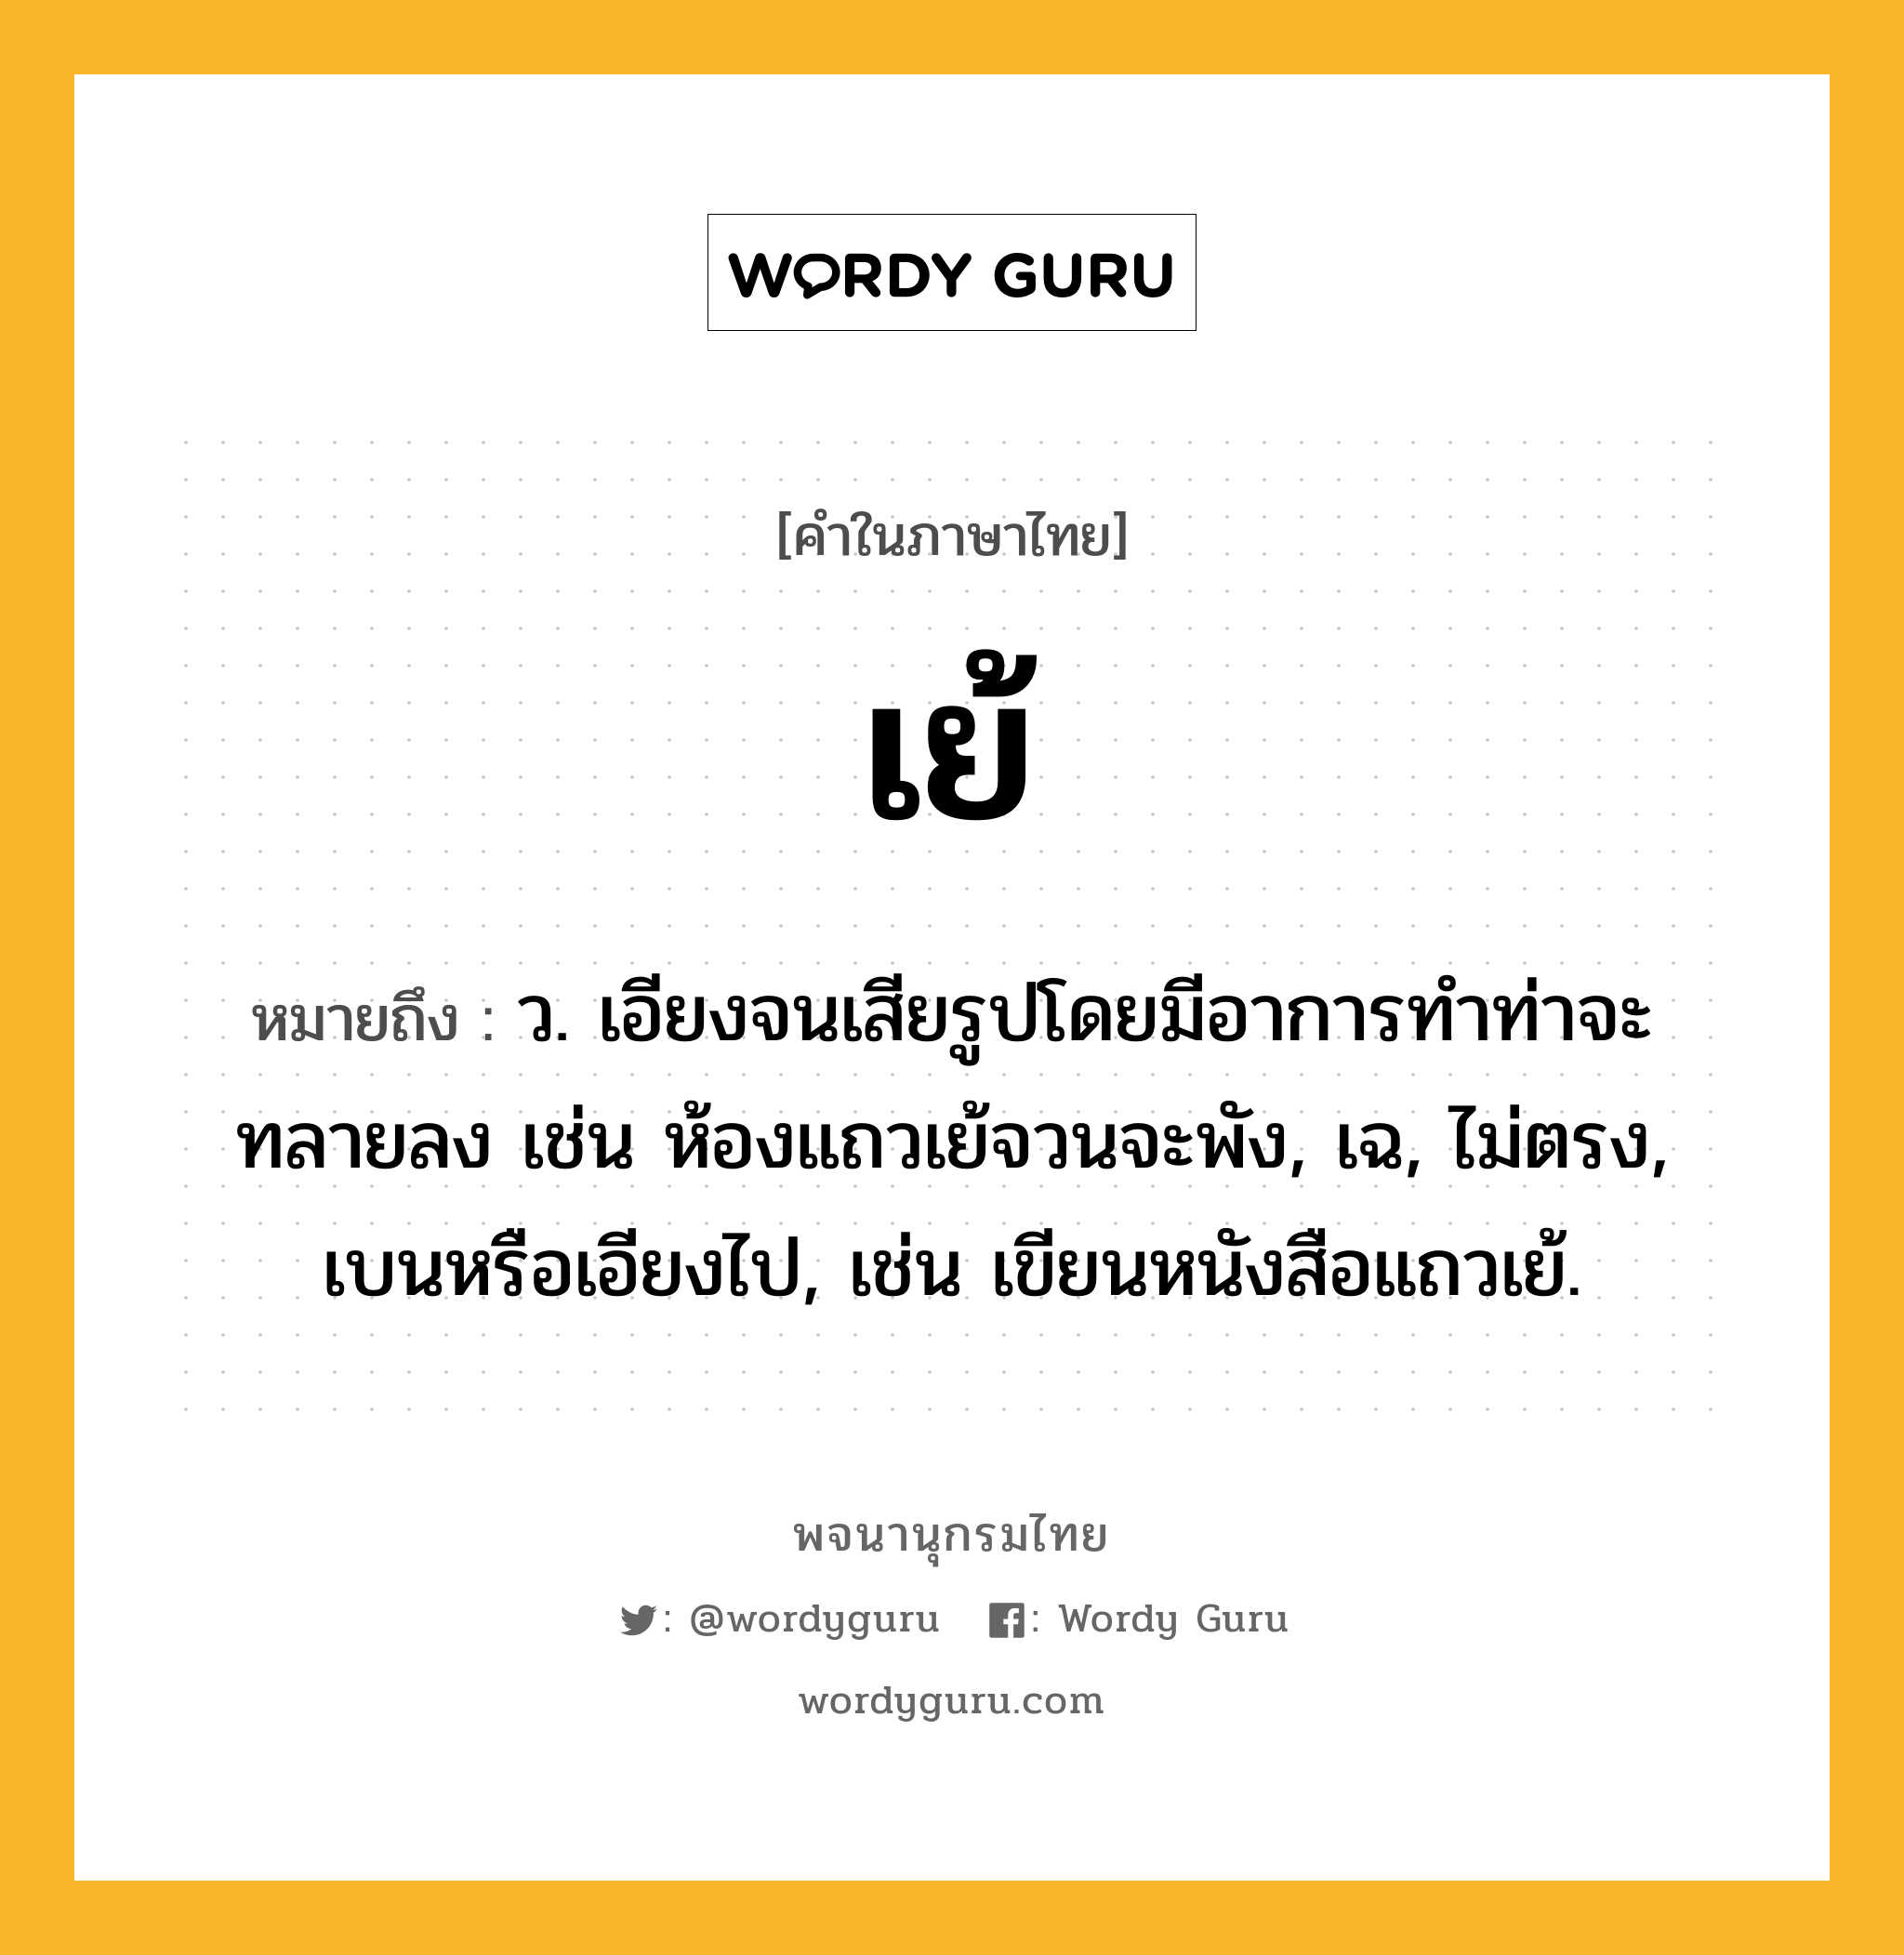 เย้ ความหมาย หมายถึงอะไร?, คำในภาษาไทย เย้ หมายถึง ว. เอียงจนเสียรูปโดยมีอาการทําท่าจะทลายลง เช่น ห้องแถวเย้จวนจะพัง, เฉ, ไม่ตรง, เบนหรือเอียงไป, เช่น เขียนหนังสือแถวเย้.